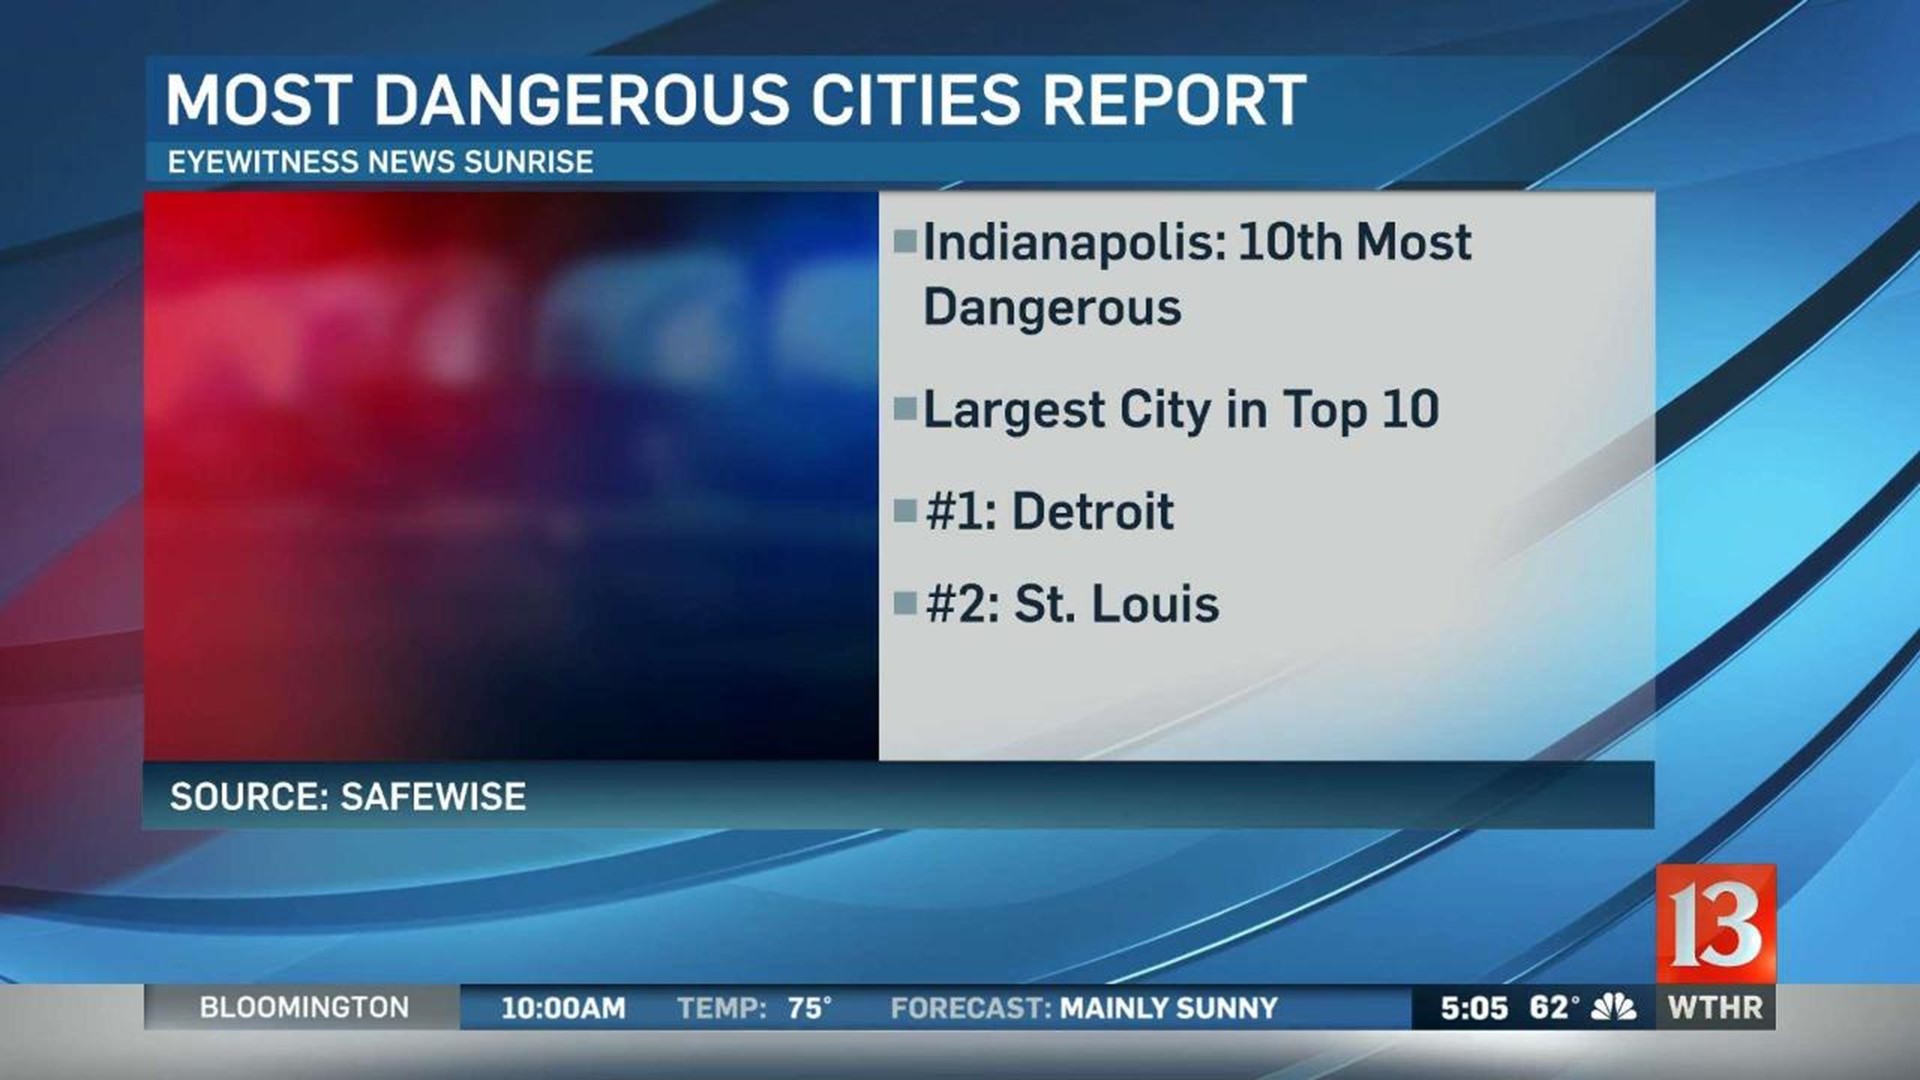 Indy 10th most dangerous city